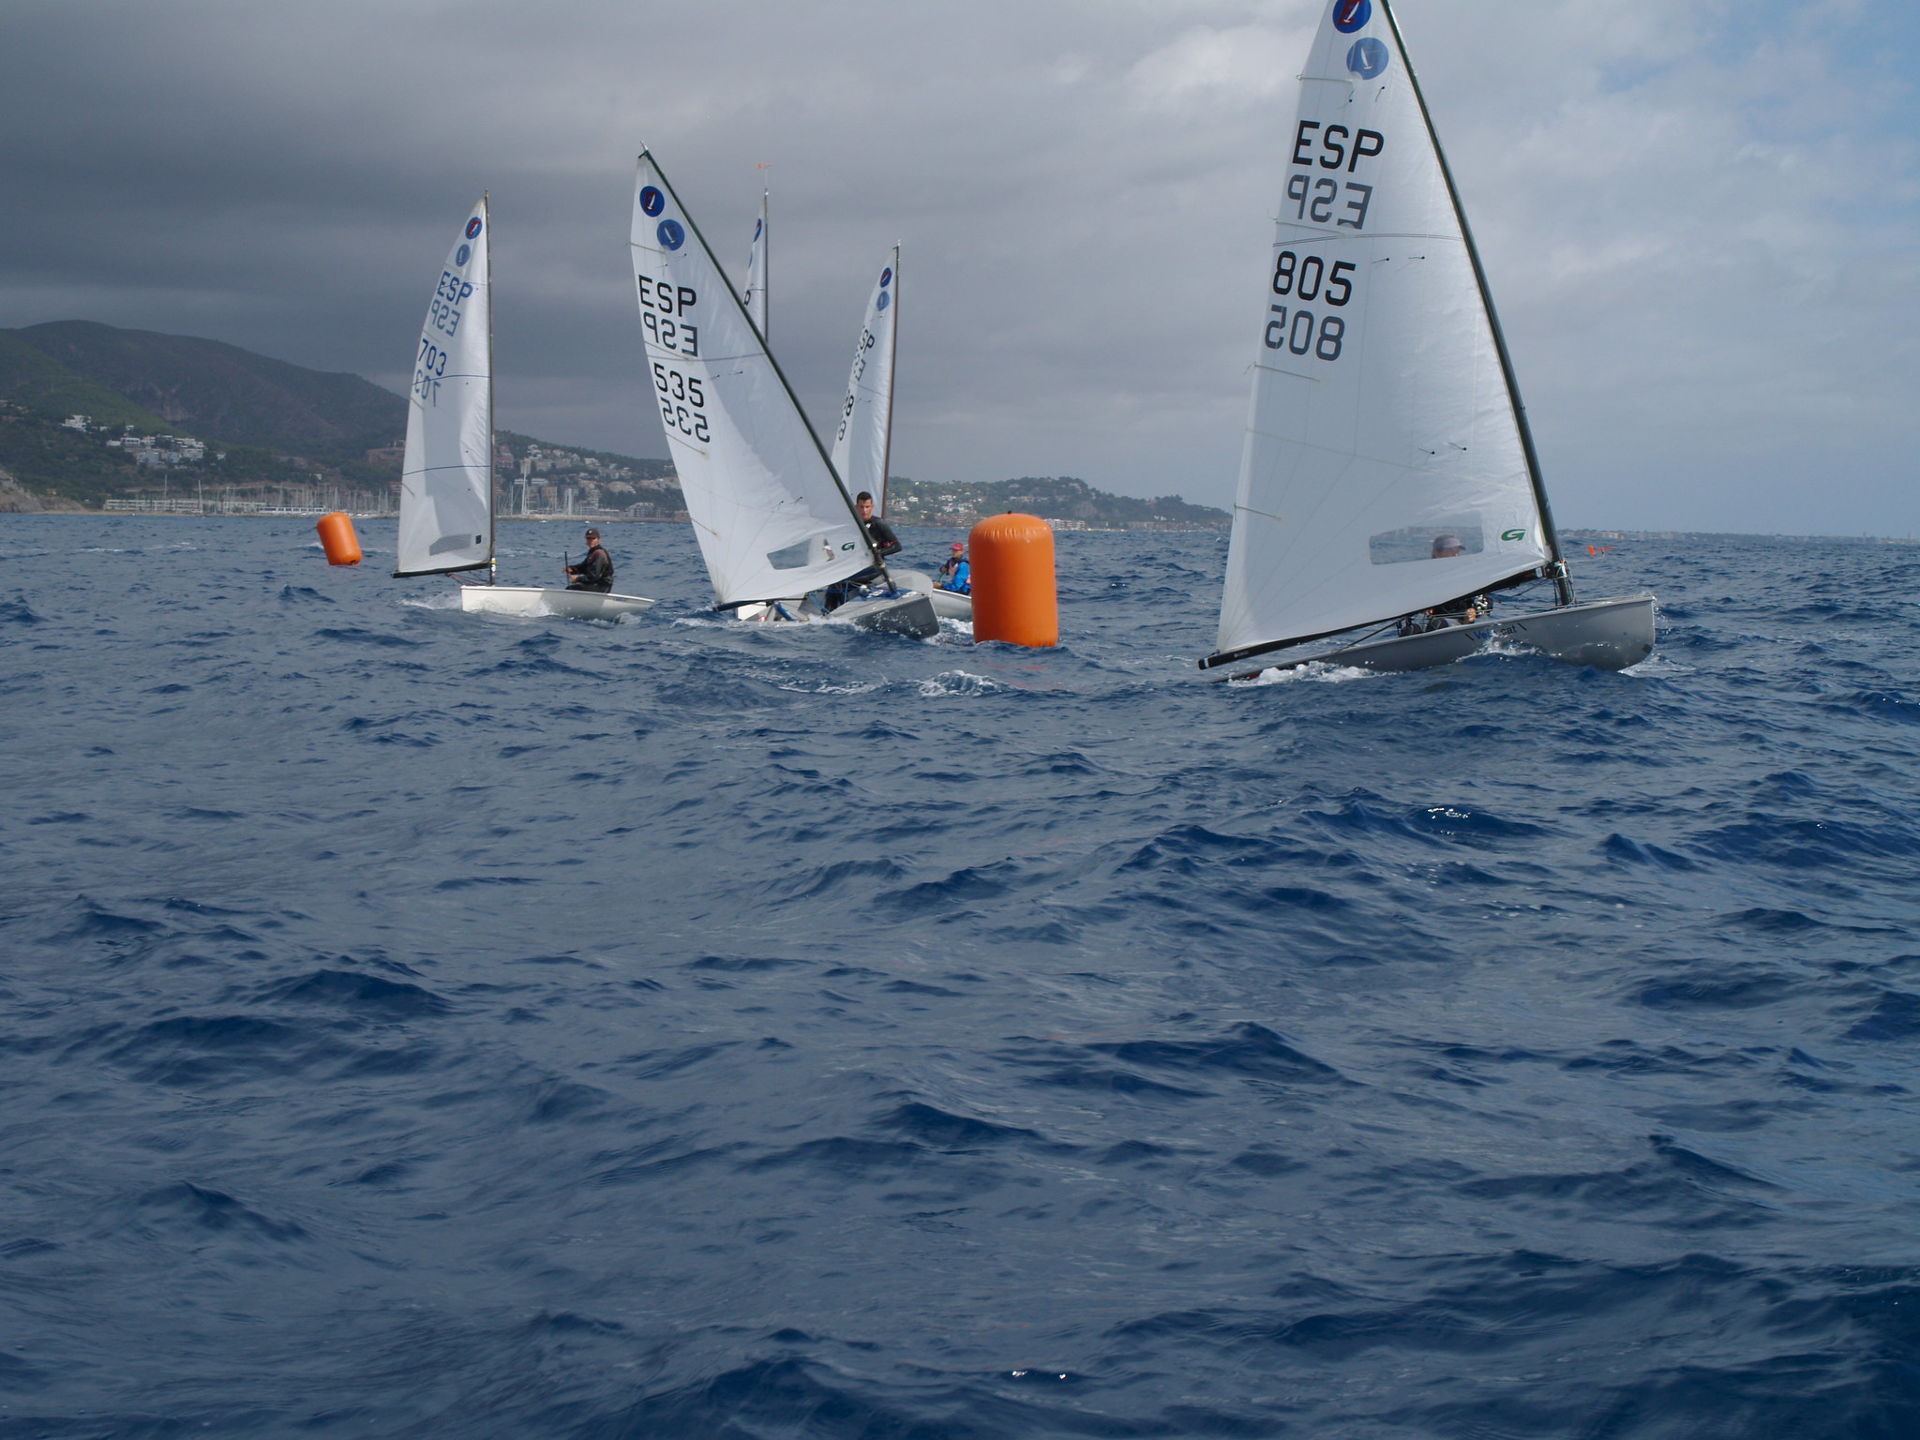 Cinc regatistes de la classe europa participen al XIX Trofeu Vela Tarquina.